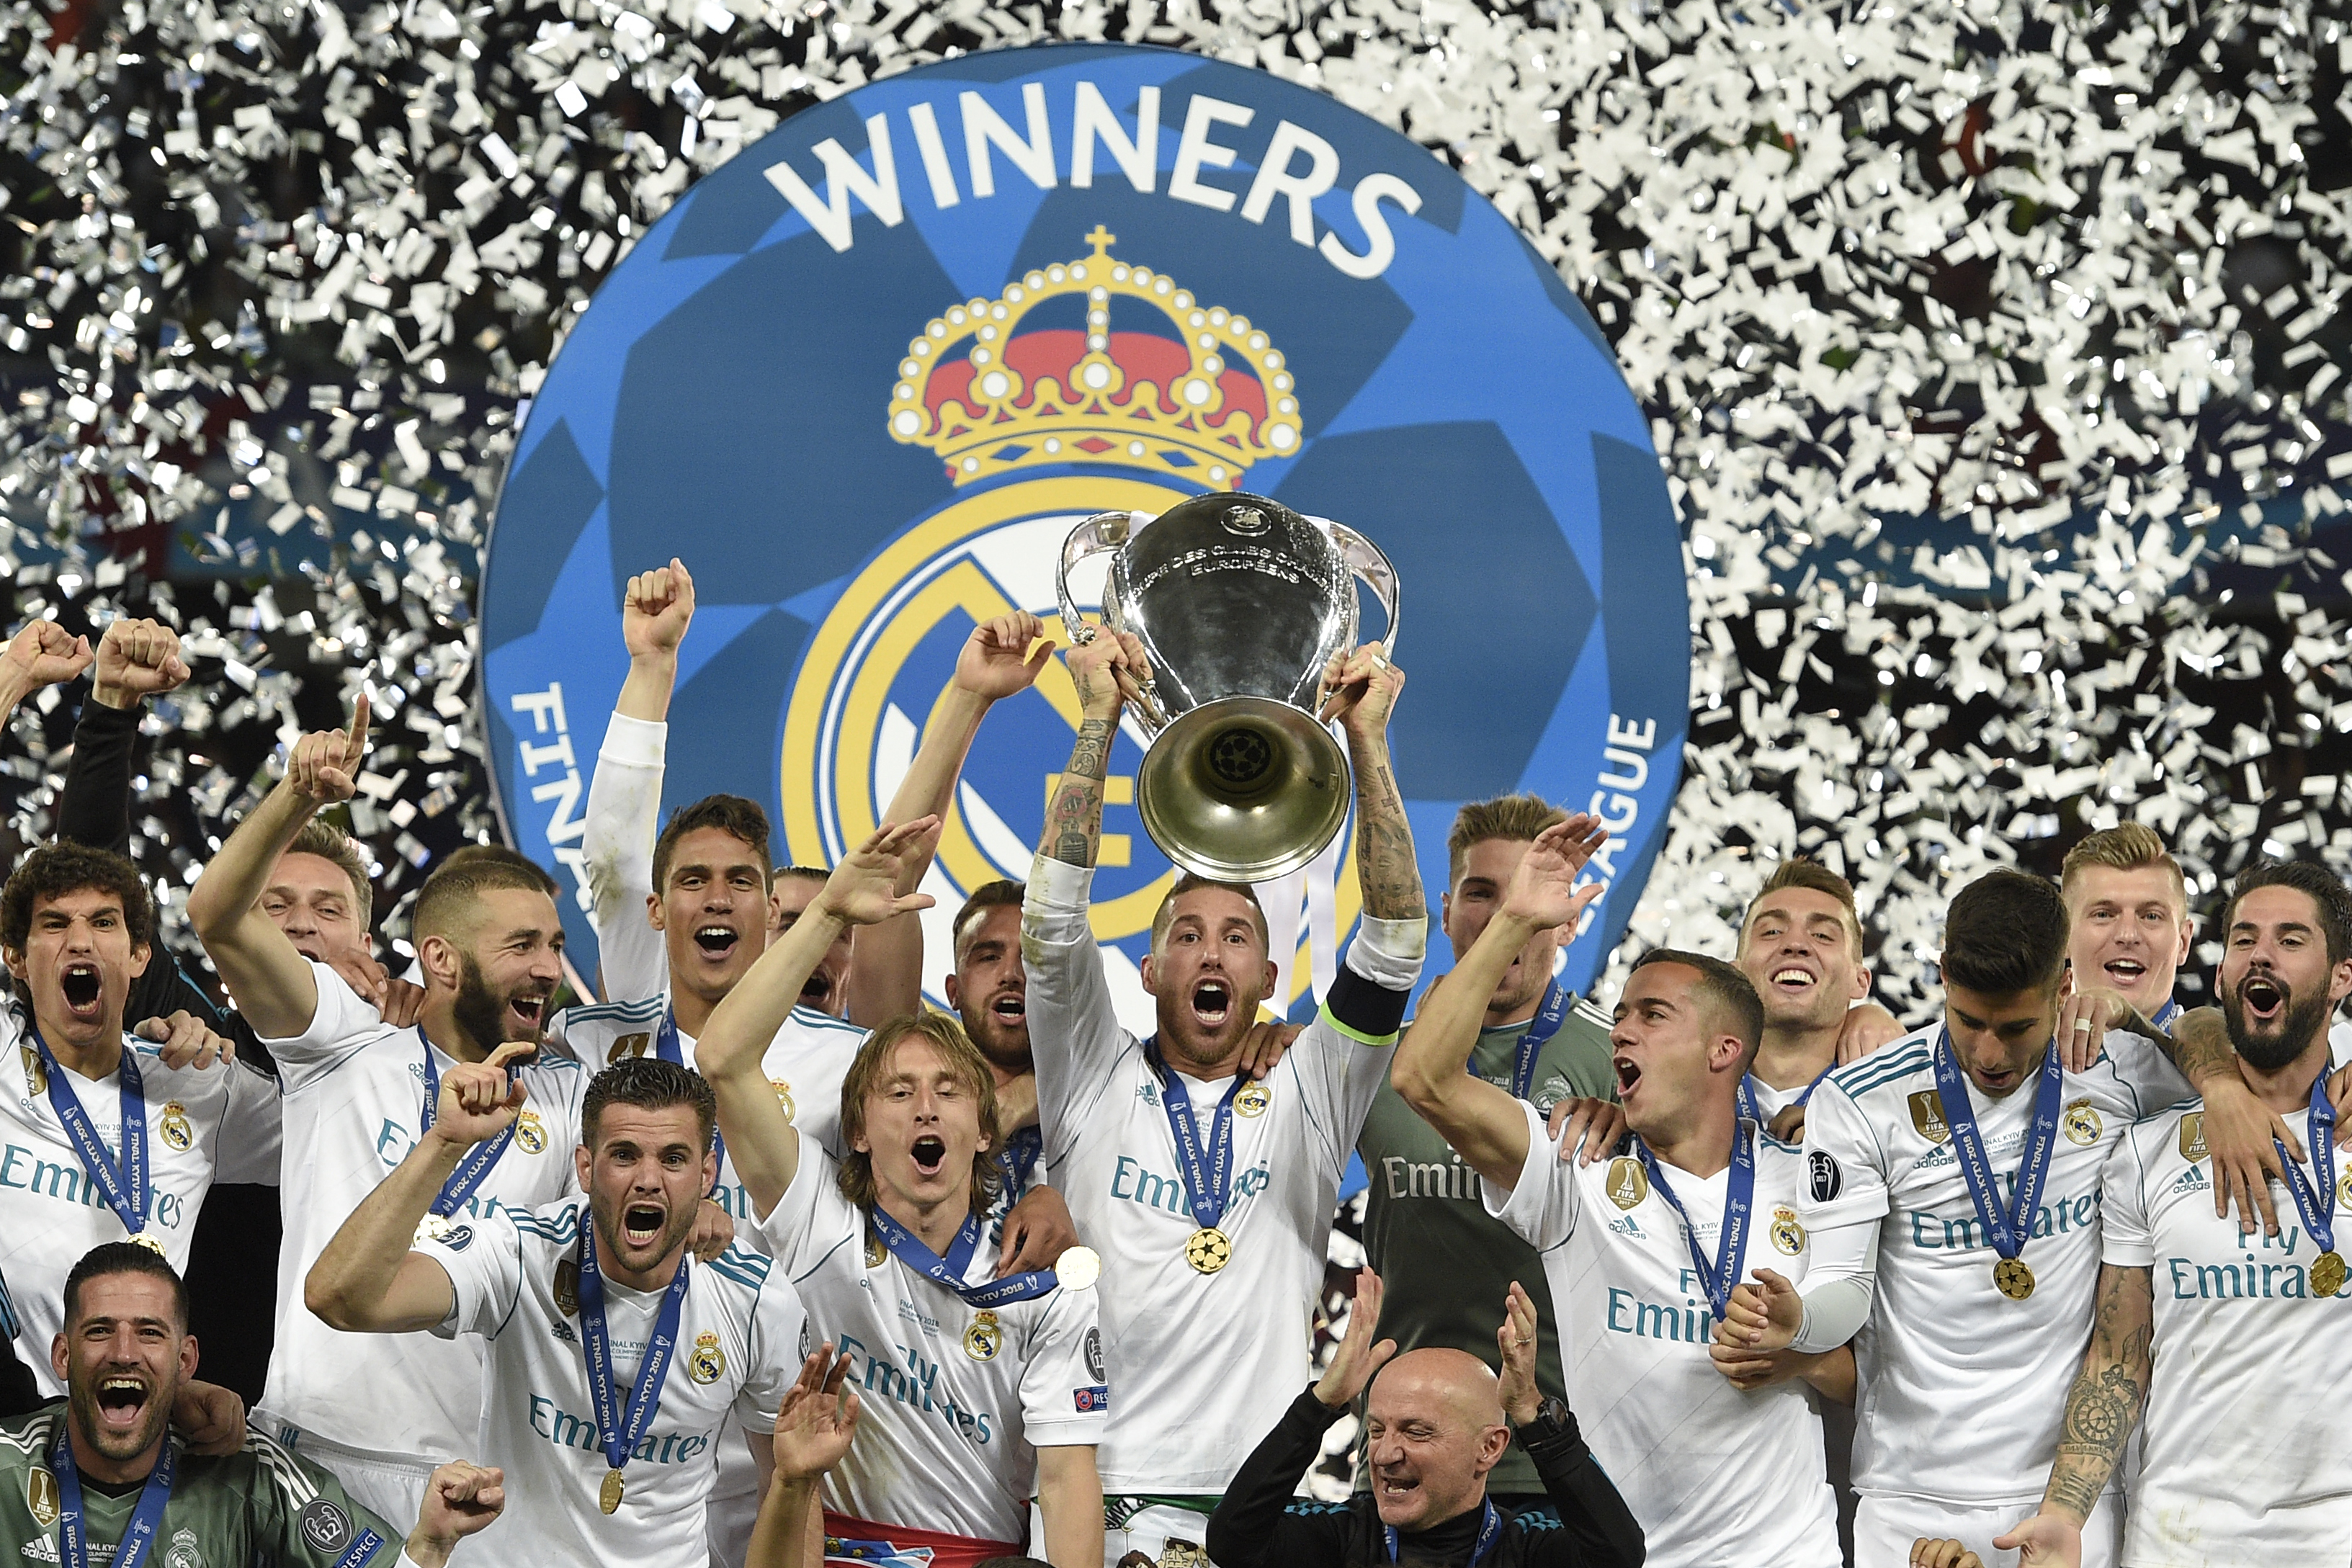 Egy könyvvizsgáló cég szerint a Real Madrid a legértékesebb fociklub